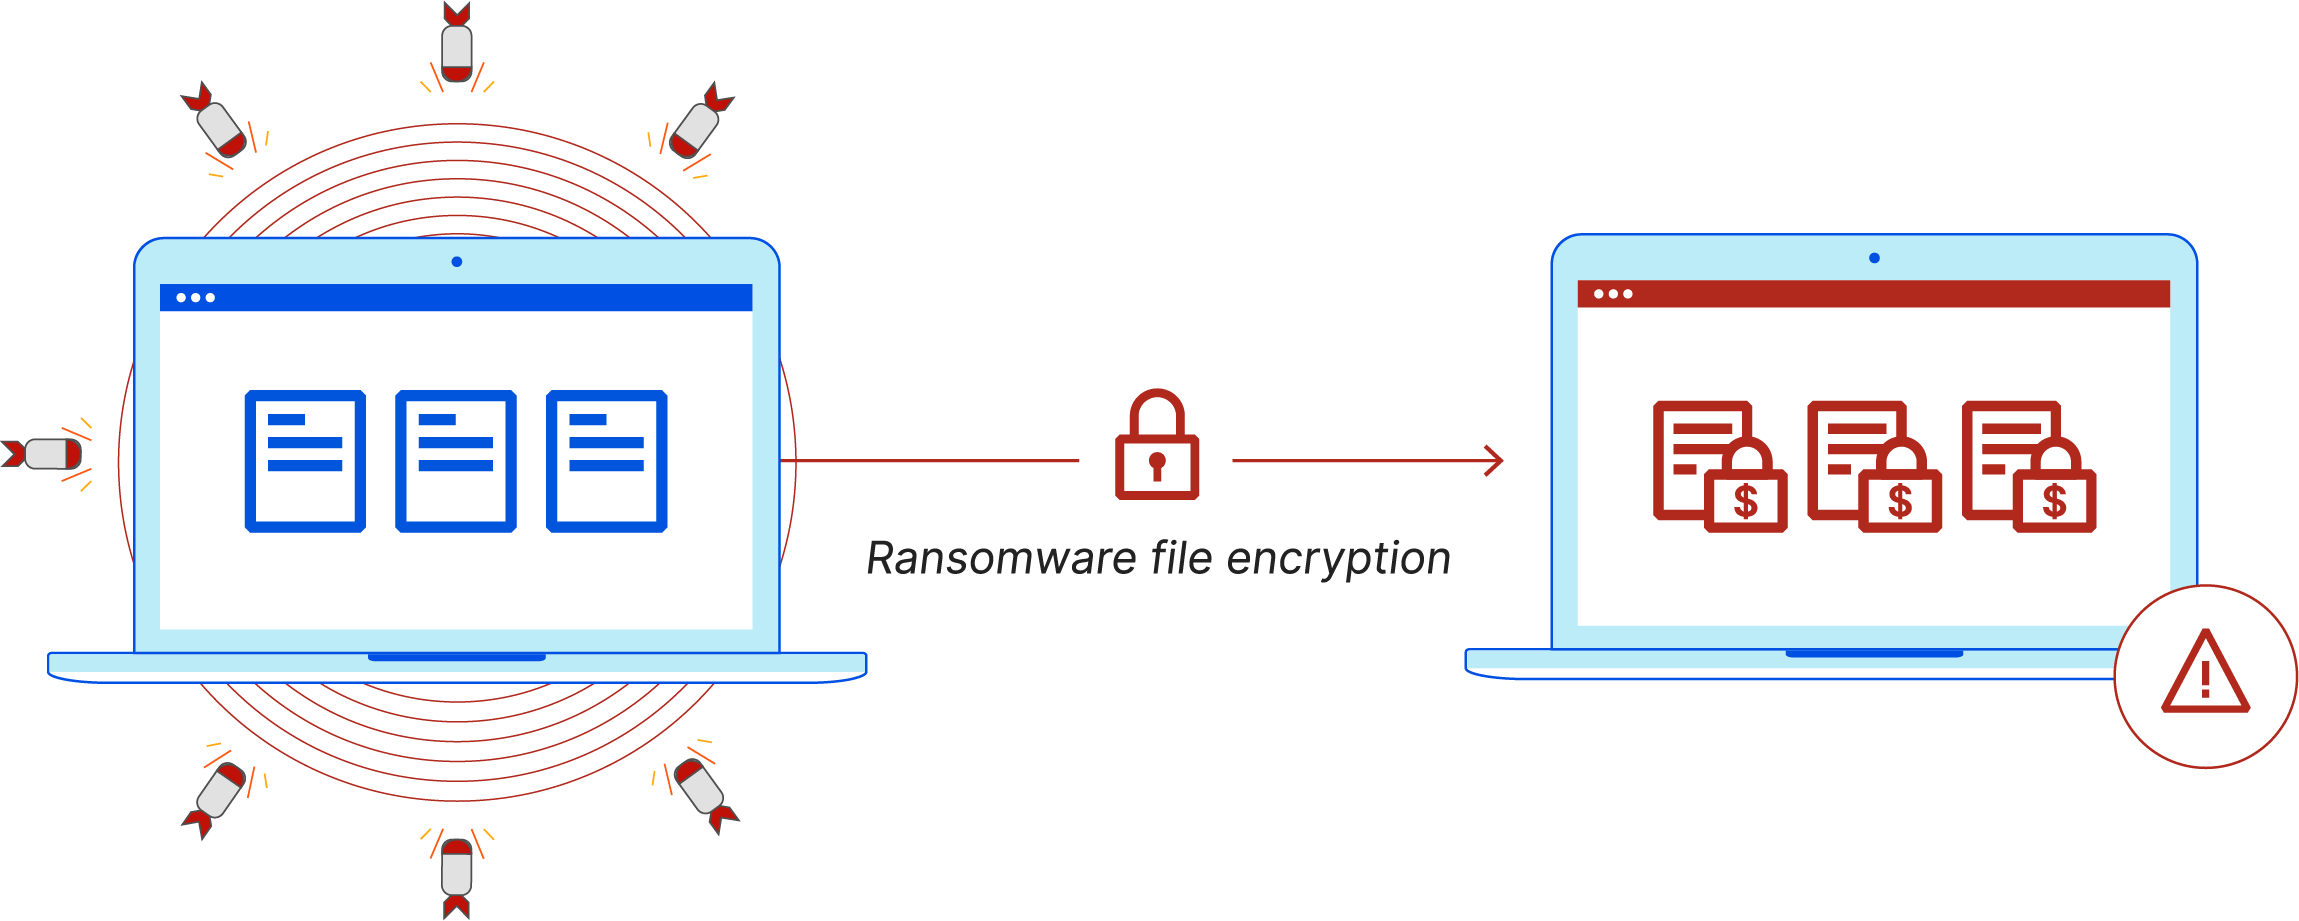 O que é ransomware? - O ransomware infecta um computador e criptografa arquivos